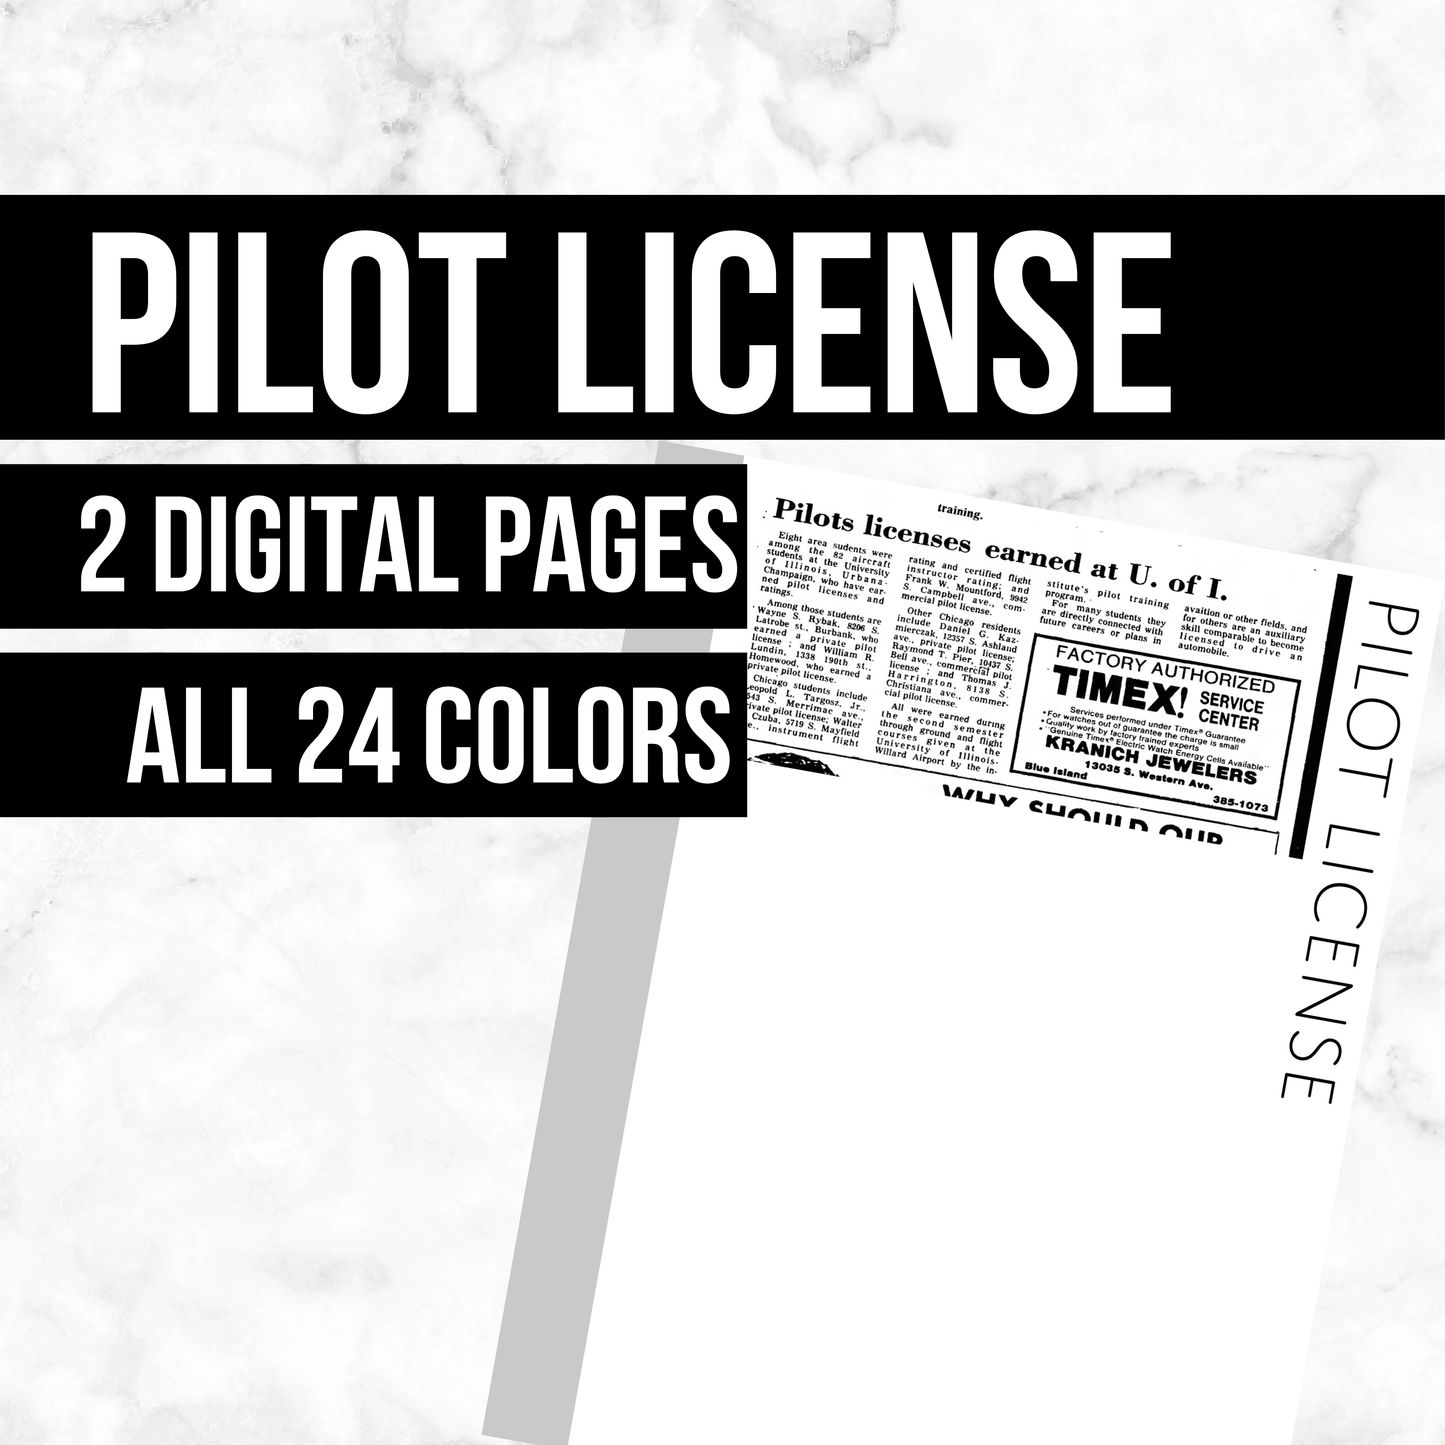 Pilot License: Printable Genealogy Form (Digital Download)